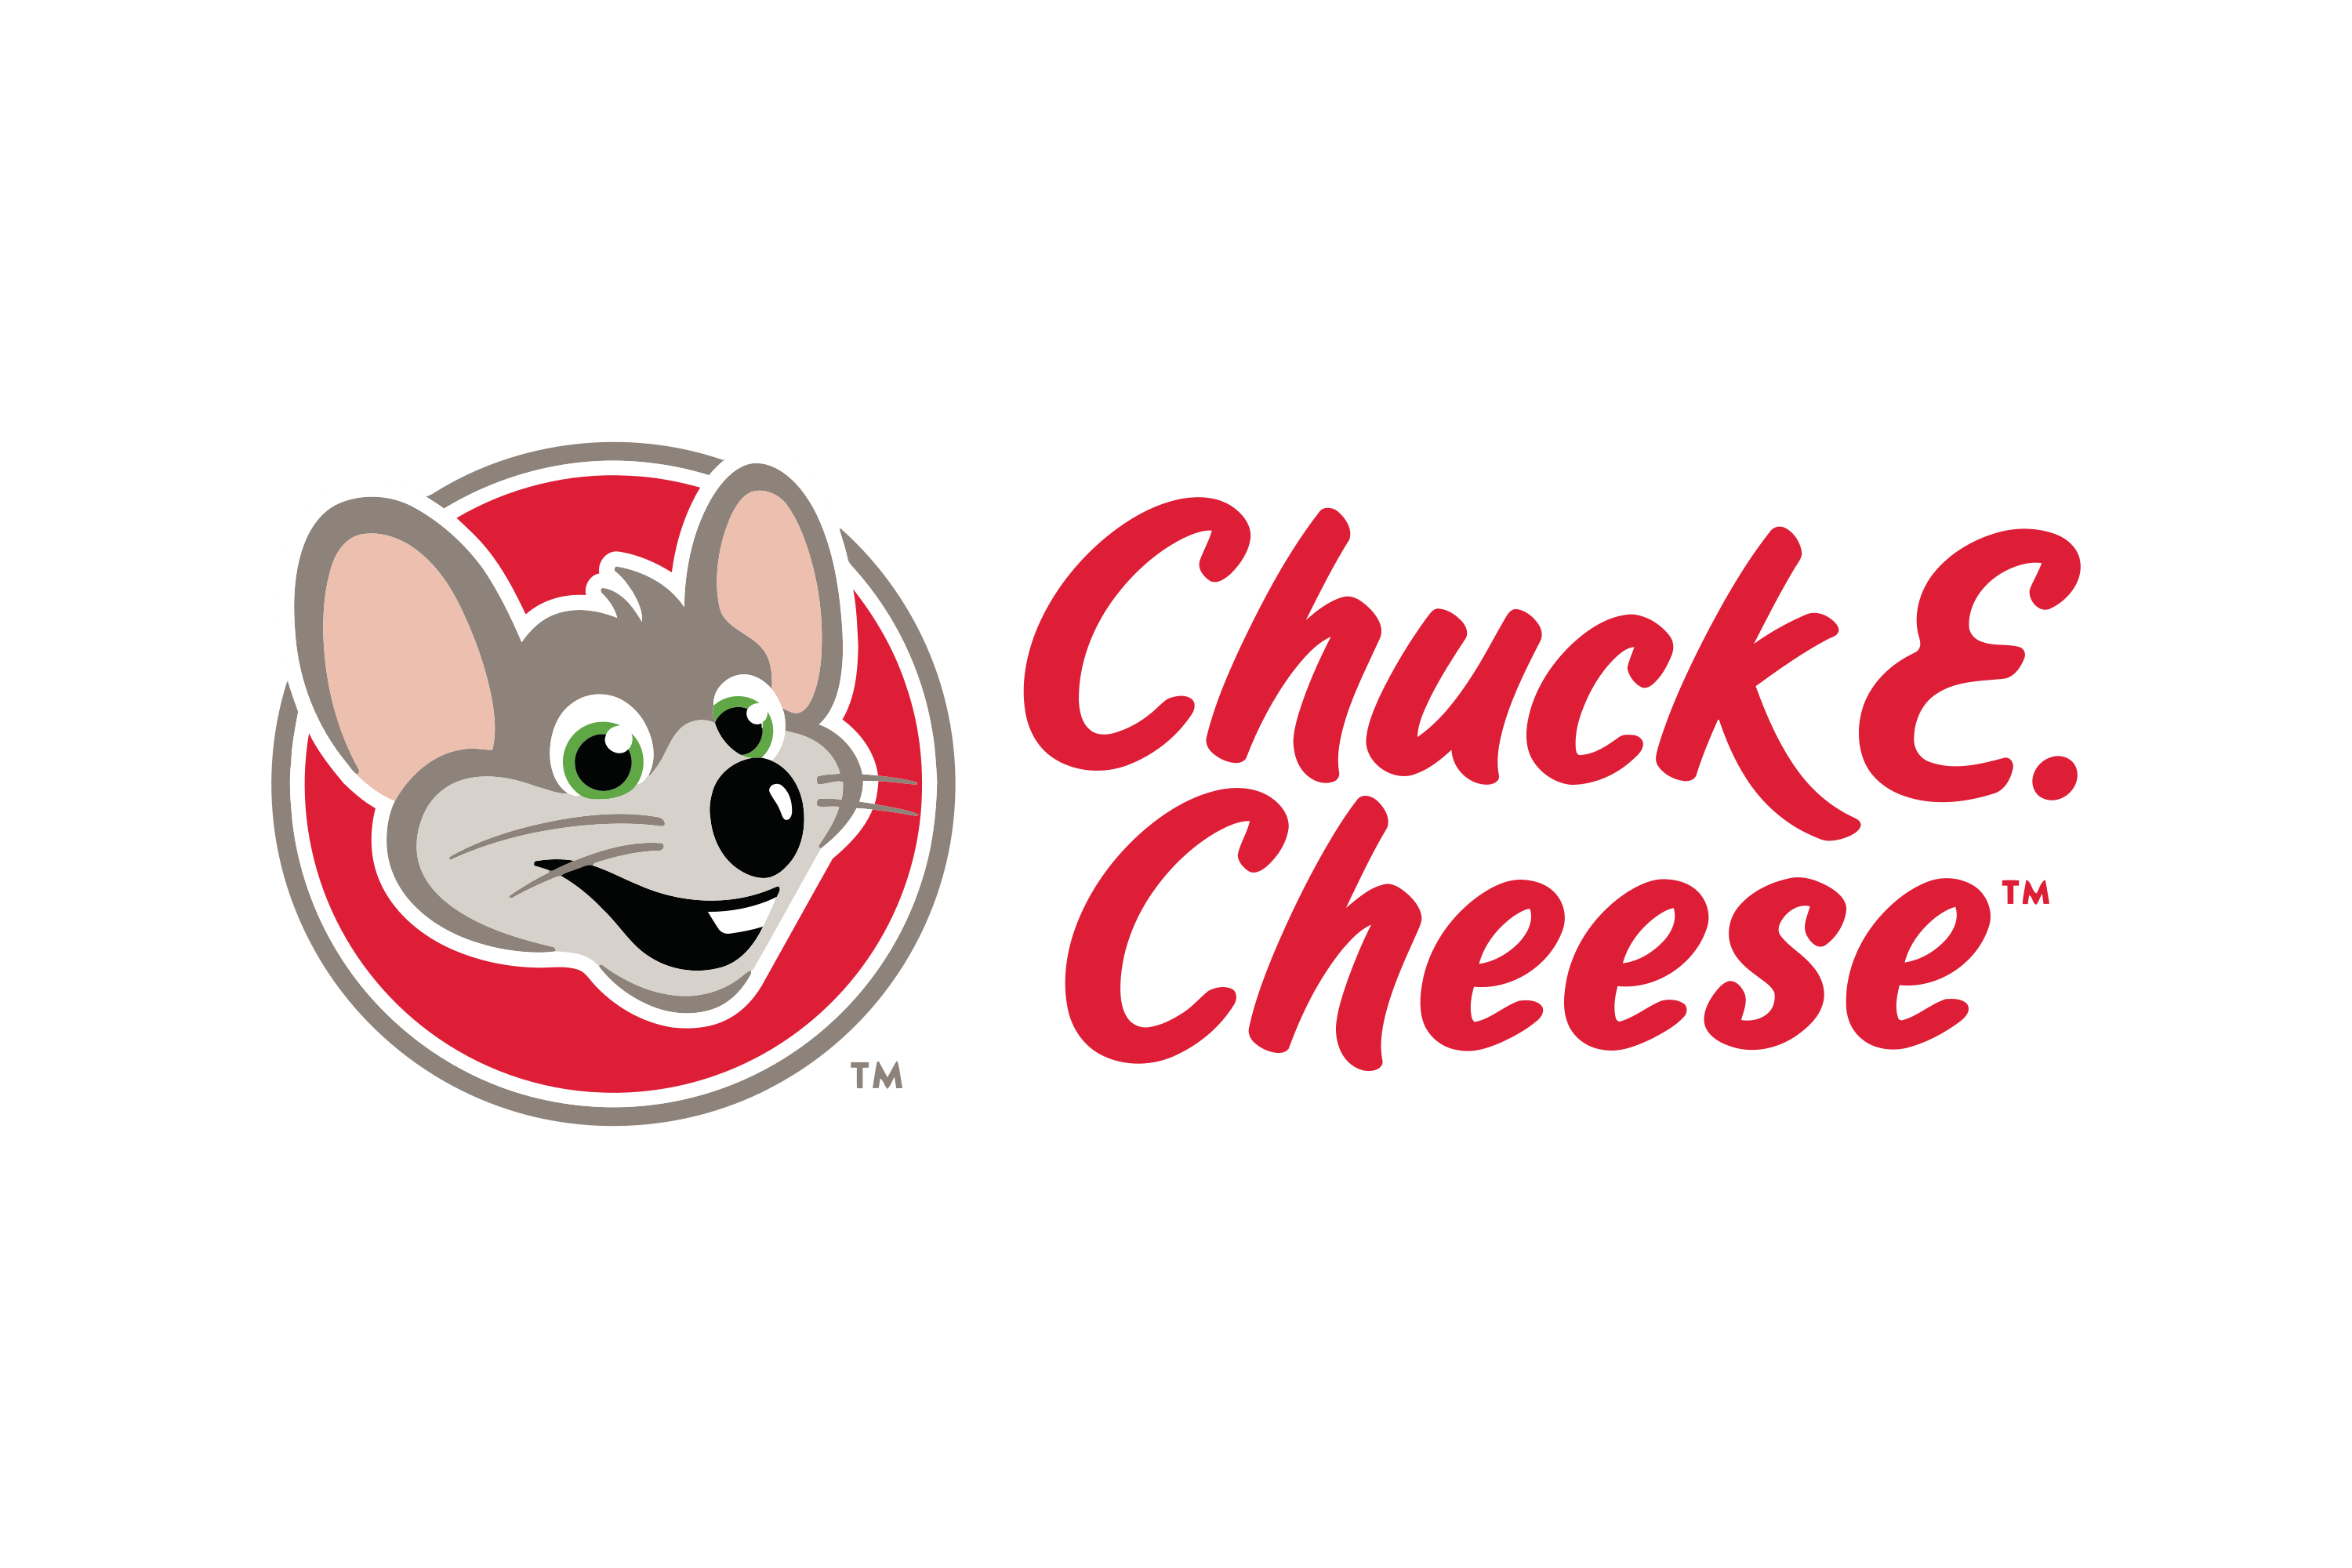 chuck e cheese's menu